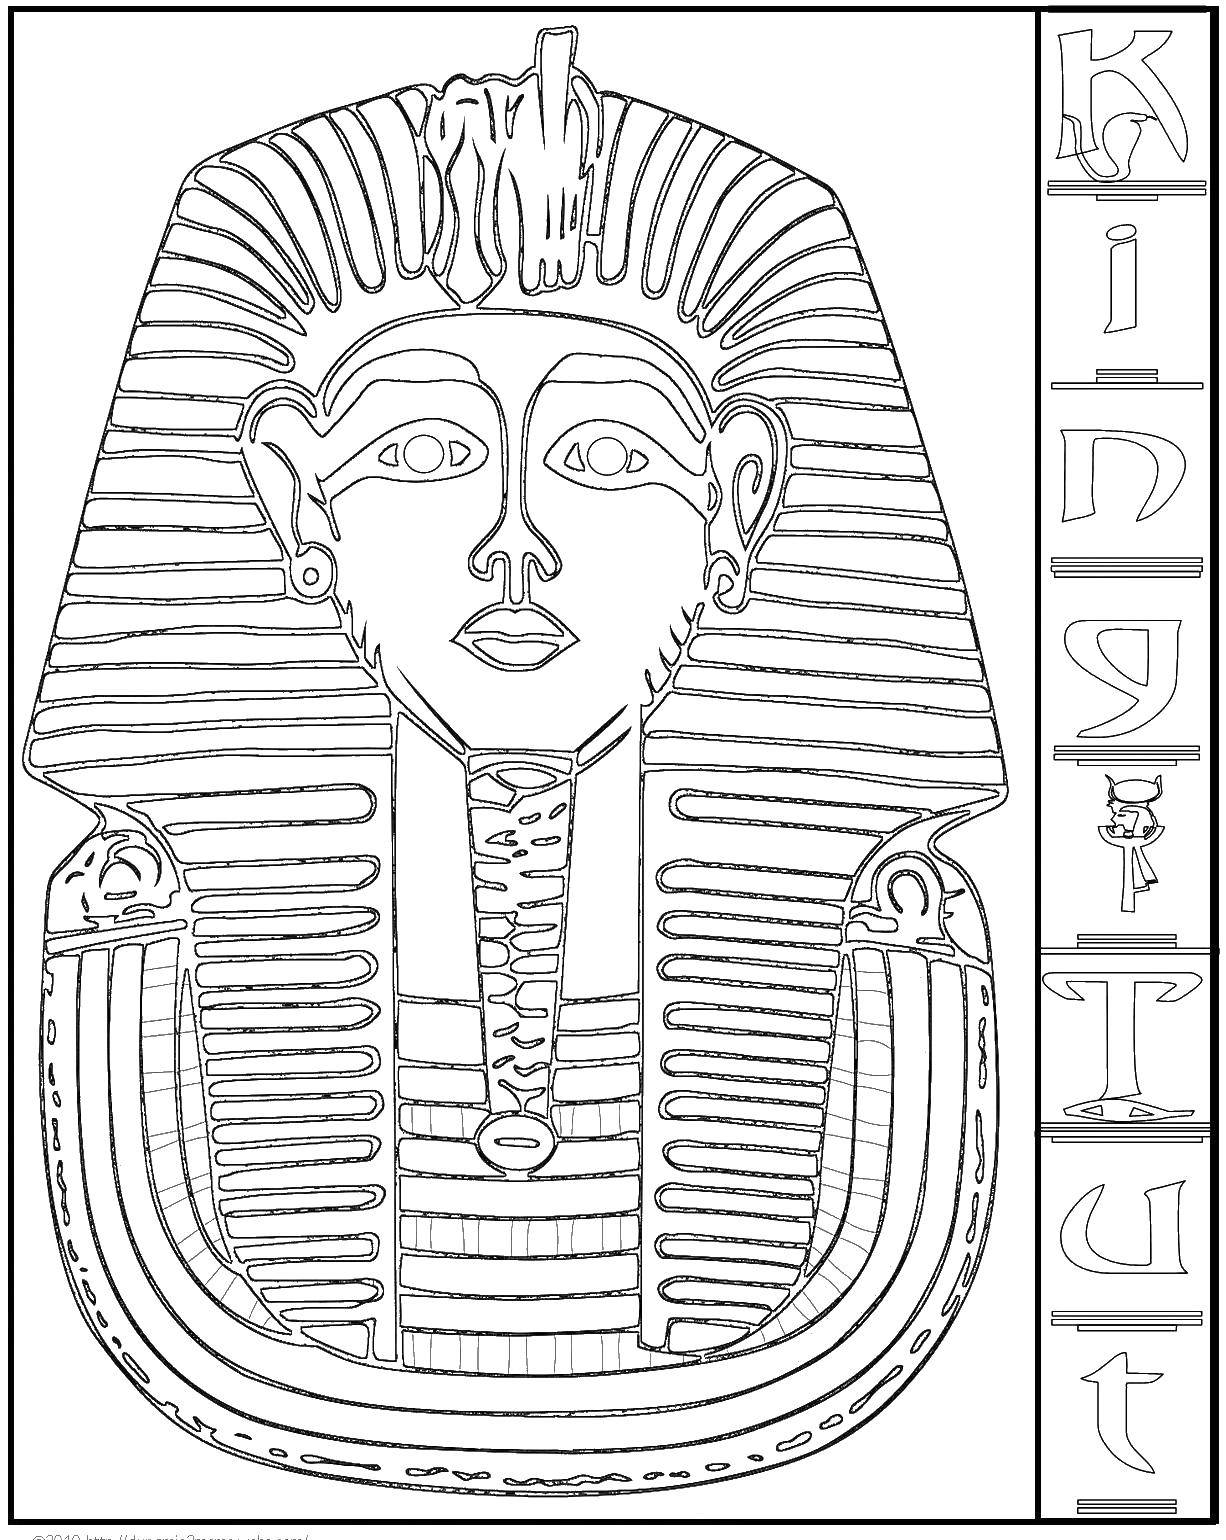 Coloring Pharaoh. Category The mummy. Tags:  the mummy, Pharaoh, Egypt.